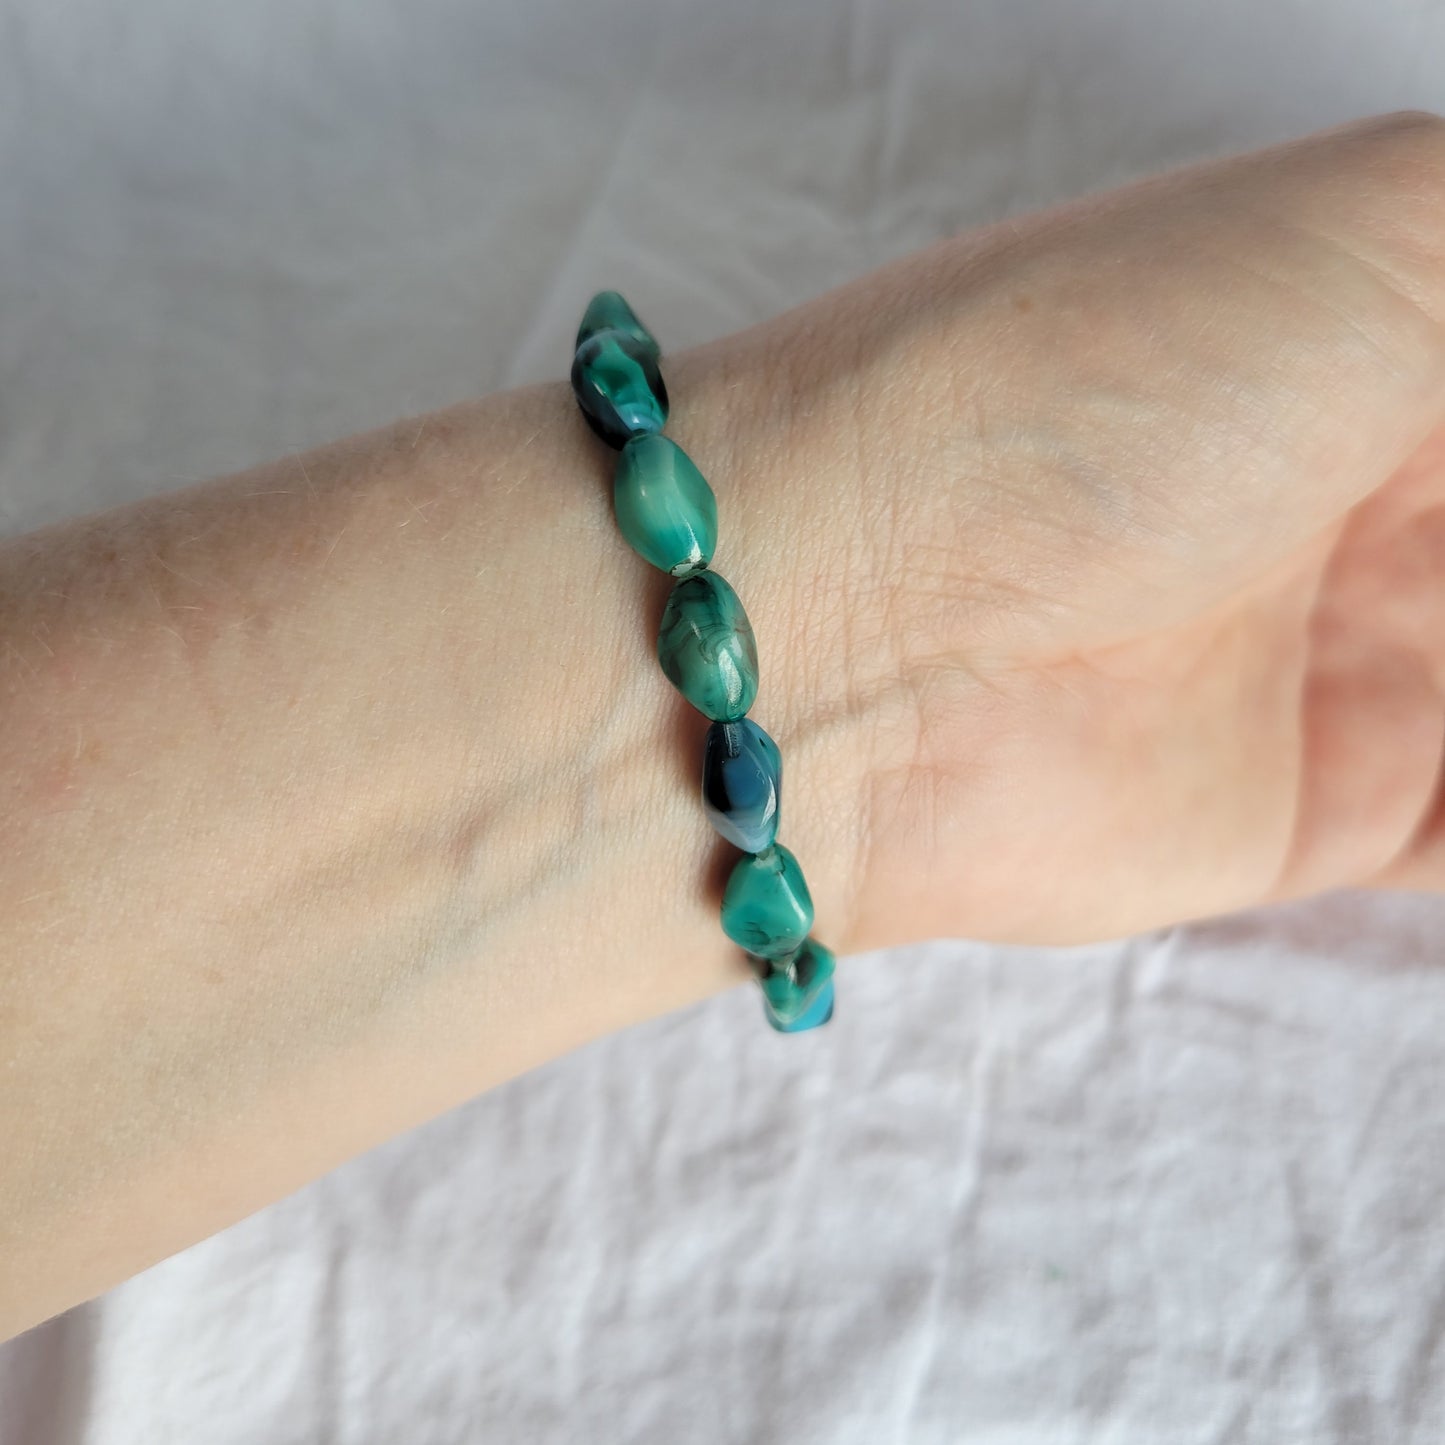 Blue Green Beaded Bracelet